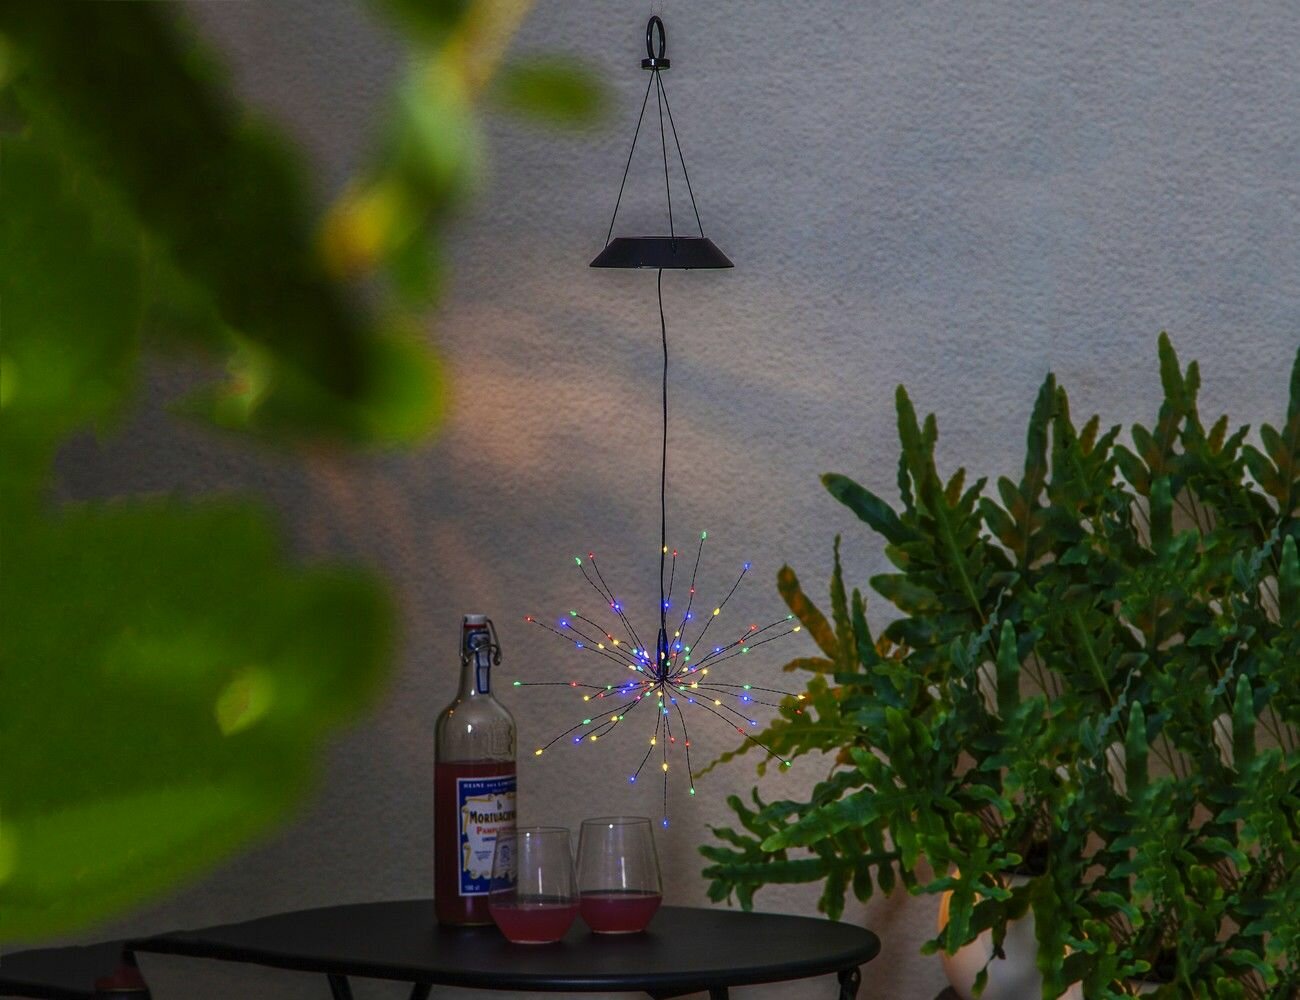 Садовый светильник подвесной SOLAR FIREWORK (фейерверк) на солнечной батарее, 90 разноцветных микро LED-огней, 50х26 см, STAR trading 481-87